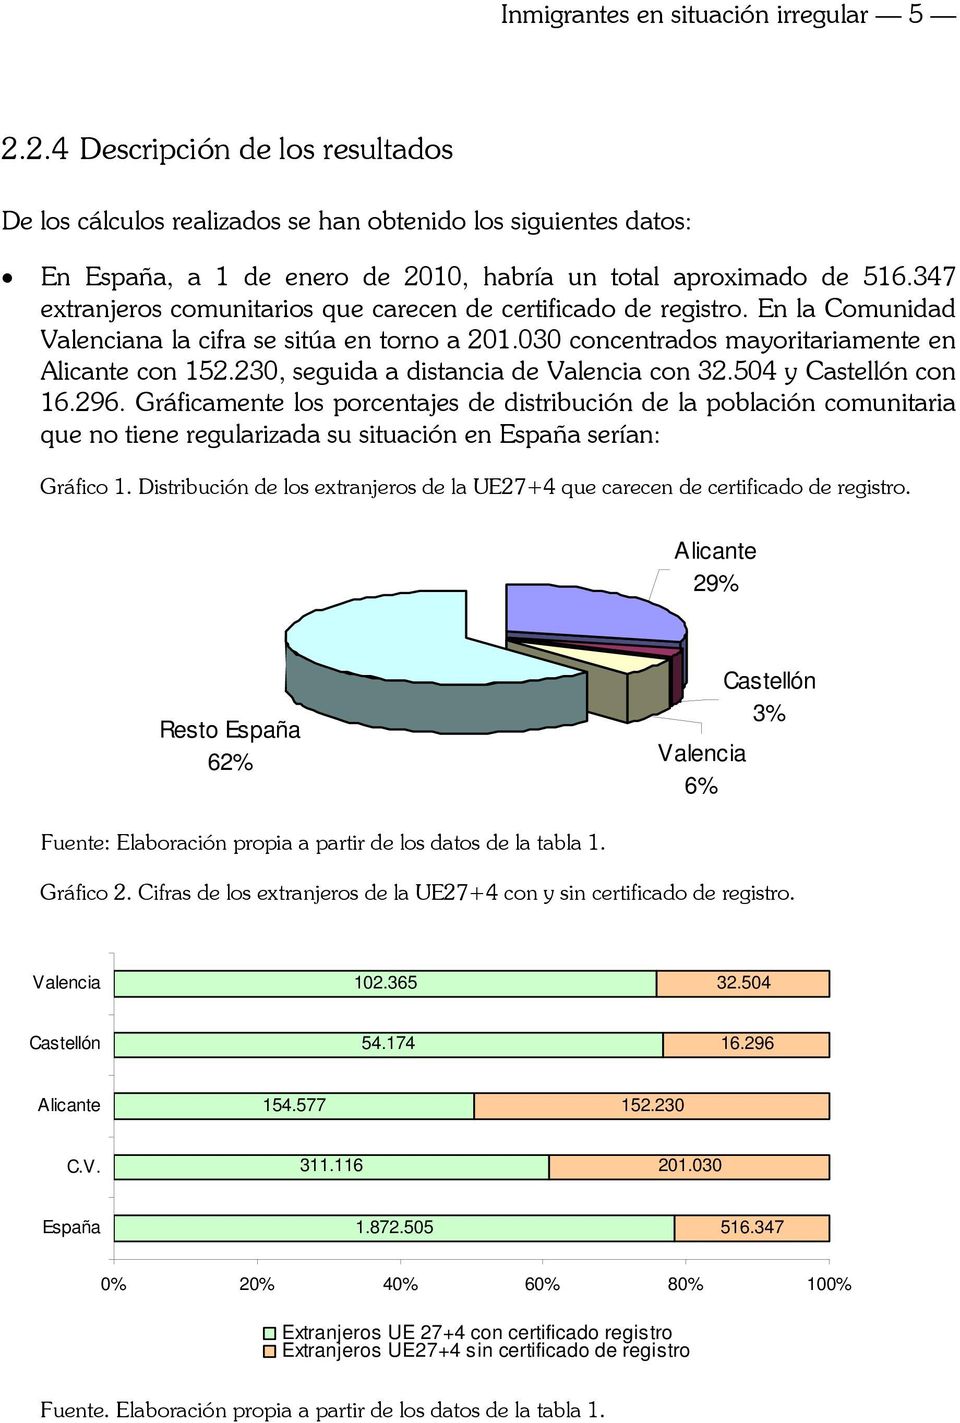 347 extranjeros comunitarios que carecen de certificado de registro. En la Comunidad Valenciana la cifra se sitúa en torno a 201.030 concentrados mayoritariamente en Alicante con 152.